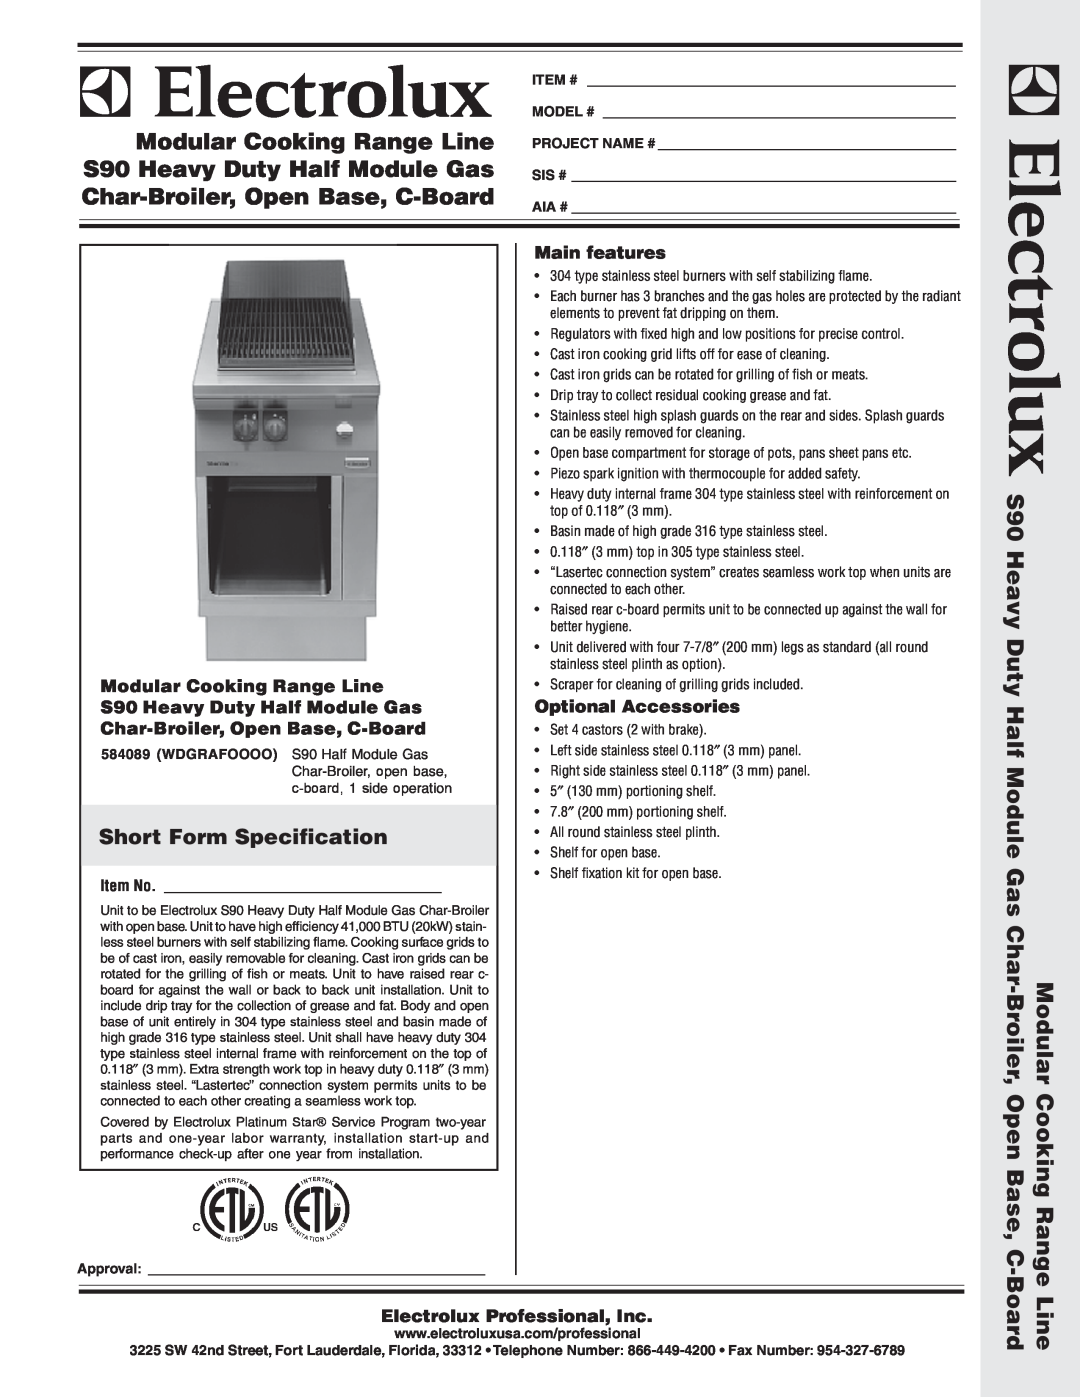 Electrolux 584089 warranty Short Form Specification, Modular Cooking Range Line S90 Heavy Duty Half Module Gas, Item # 